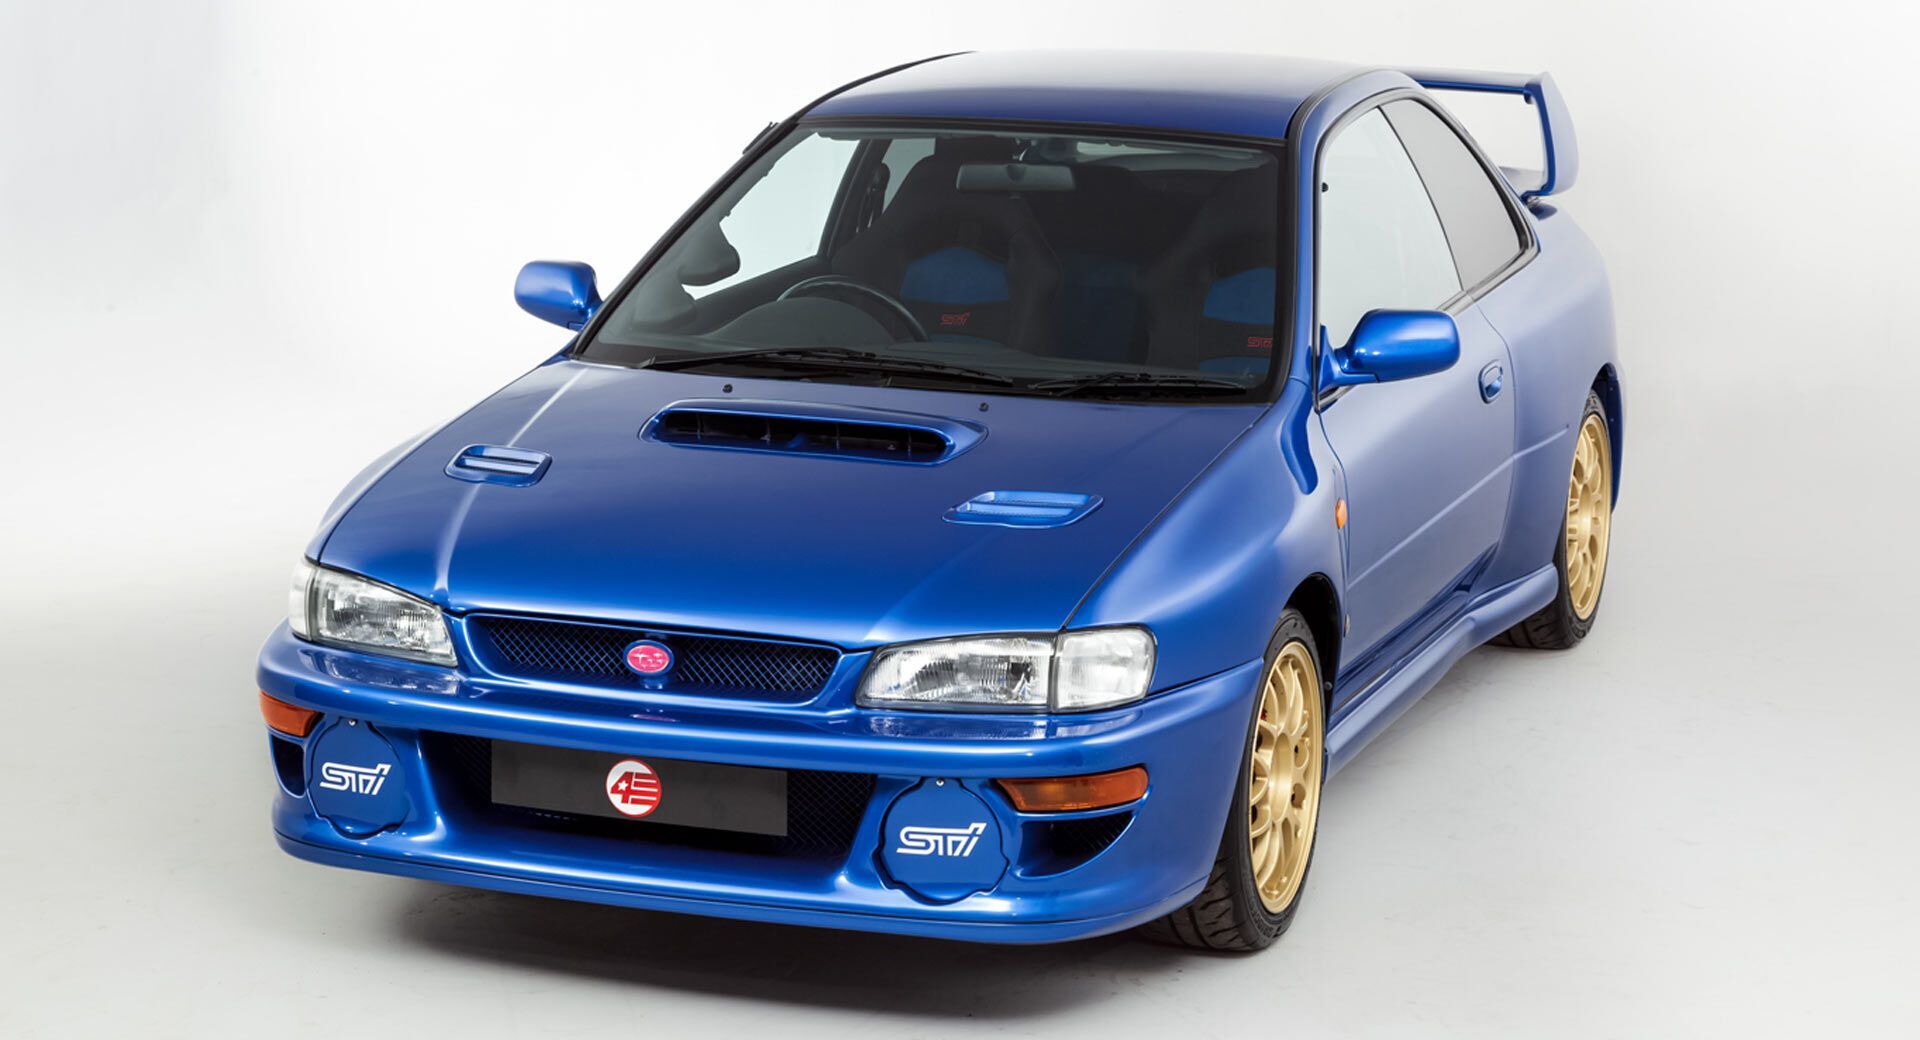 Оригинальная двухдверная версия Subaru Impreza WRC предлагалась только на японском рынке